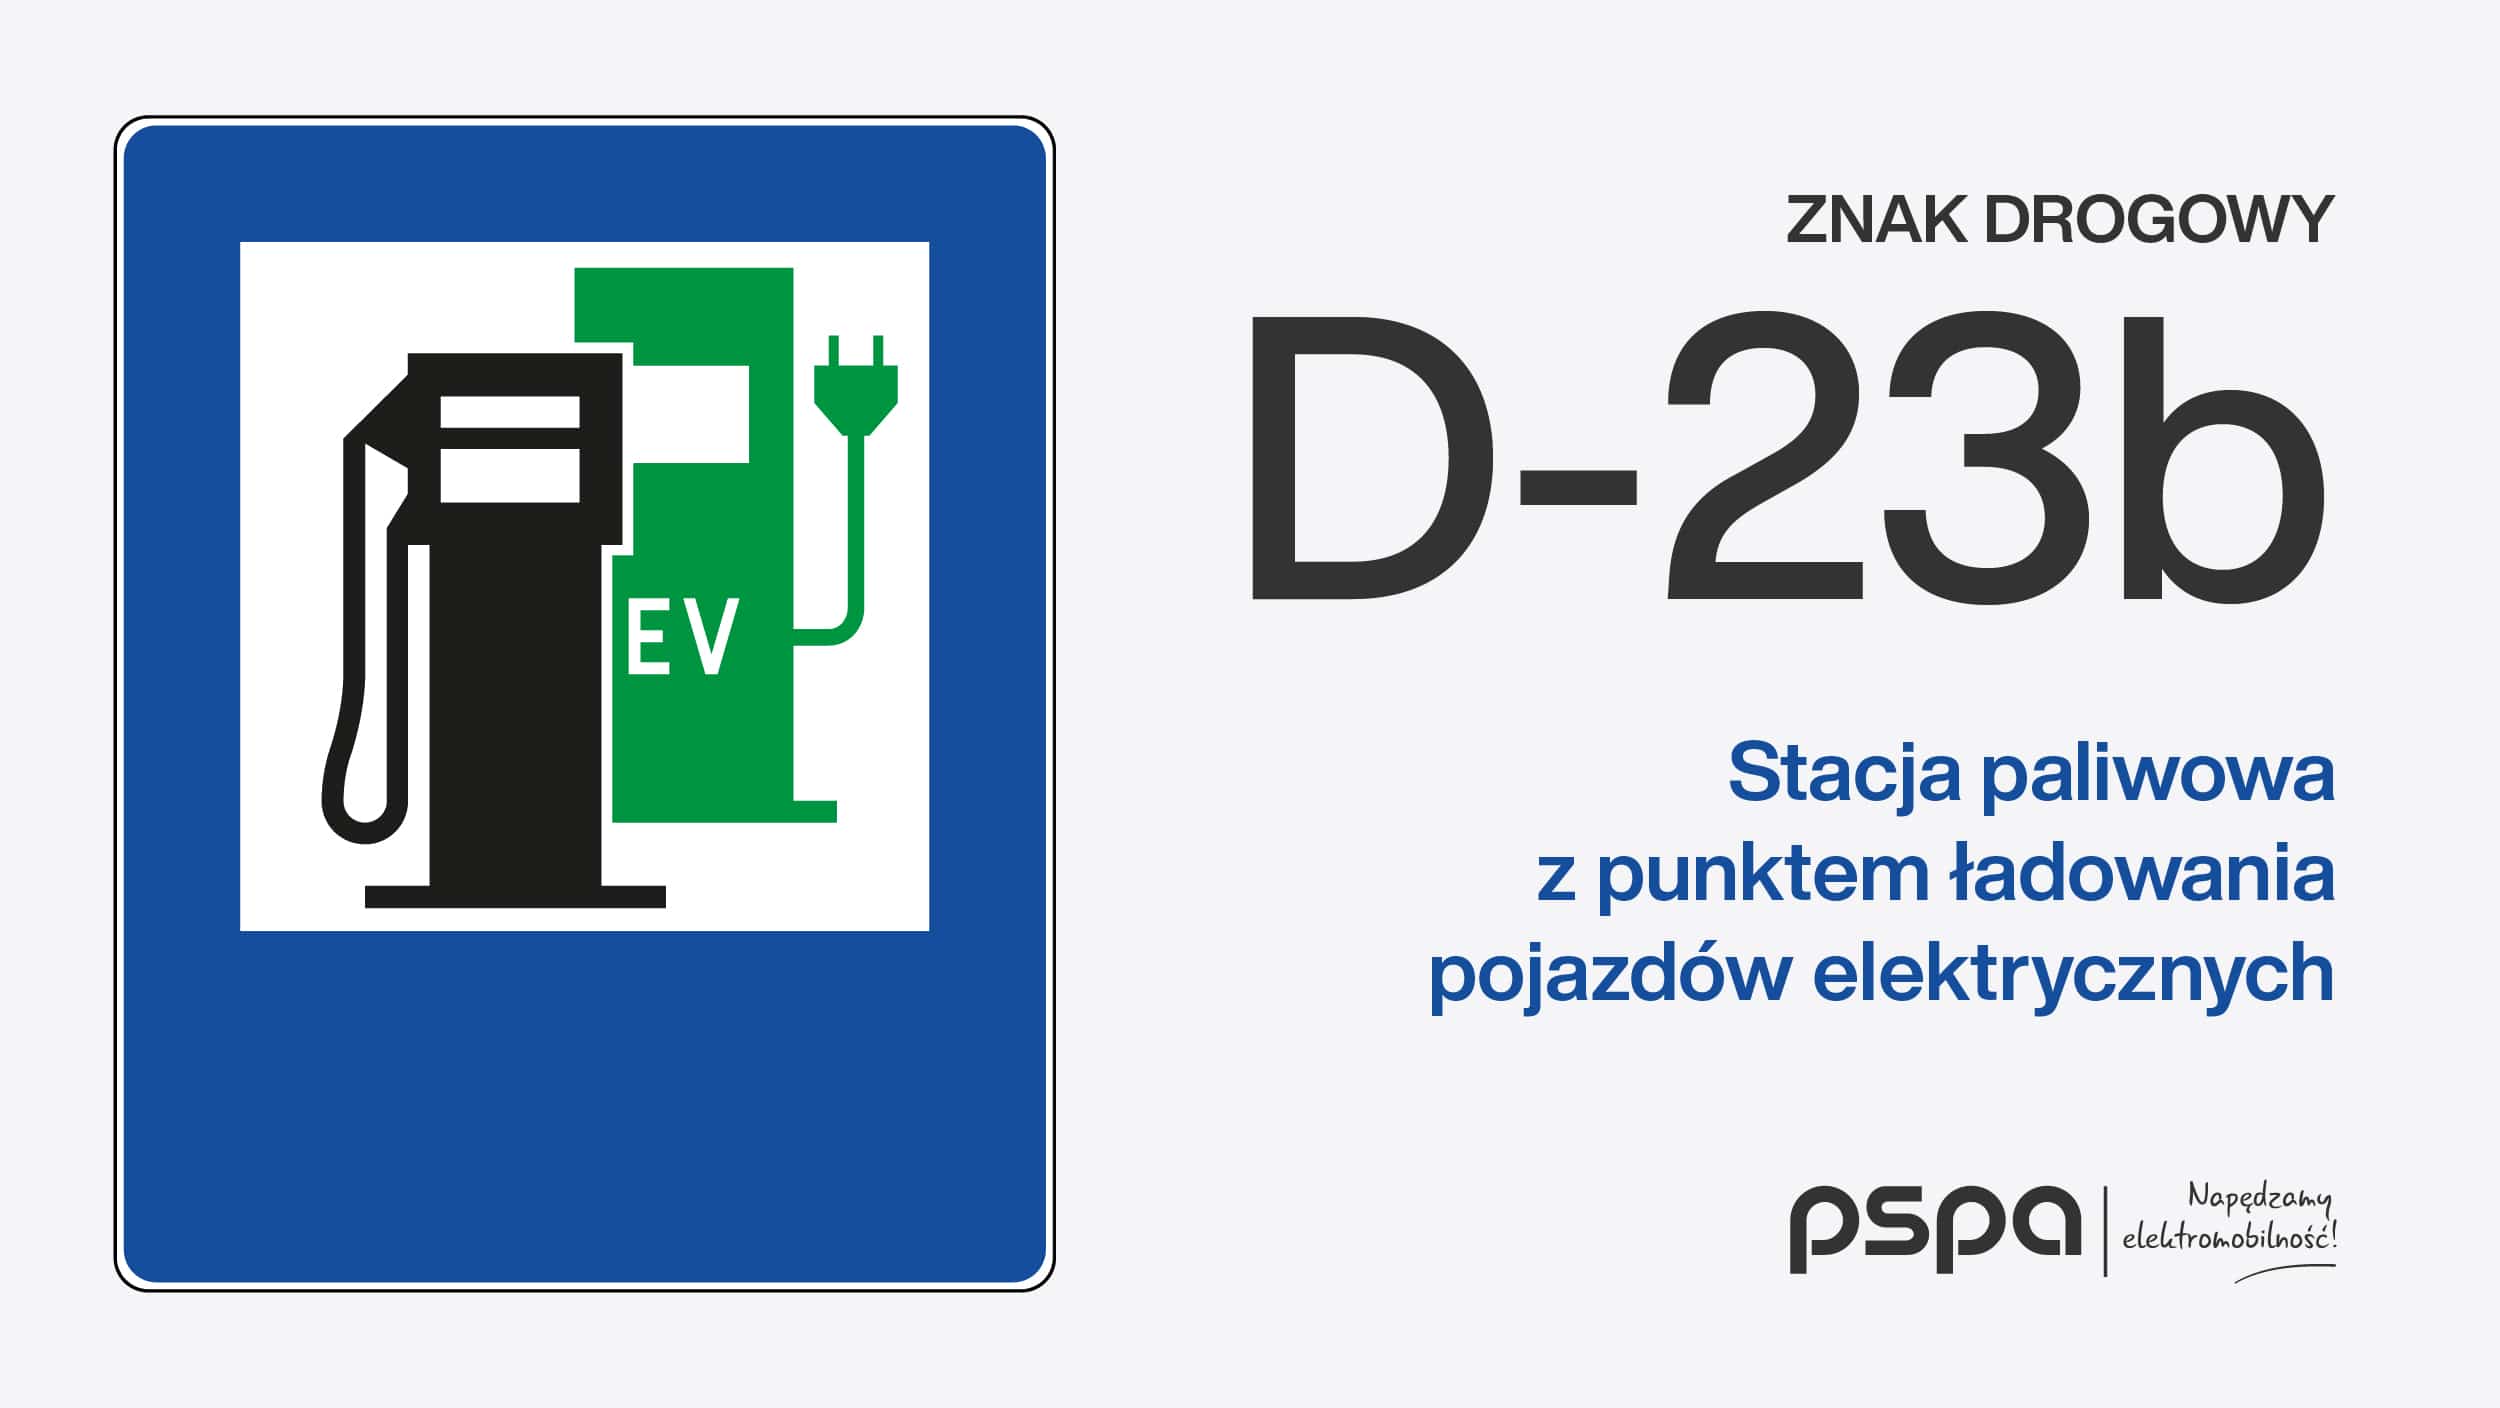 PSPA_Znaki_dla_elektromobilnosci_FOT_2